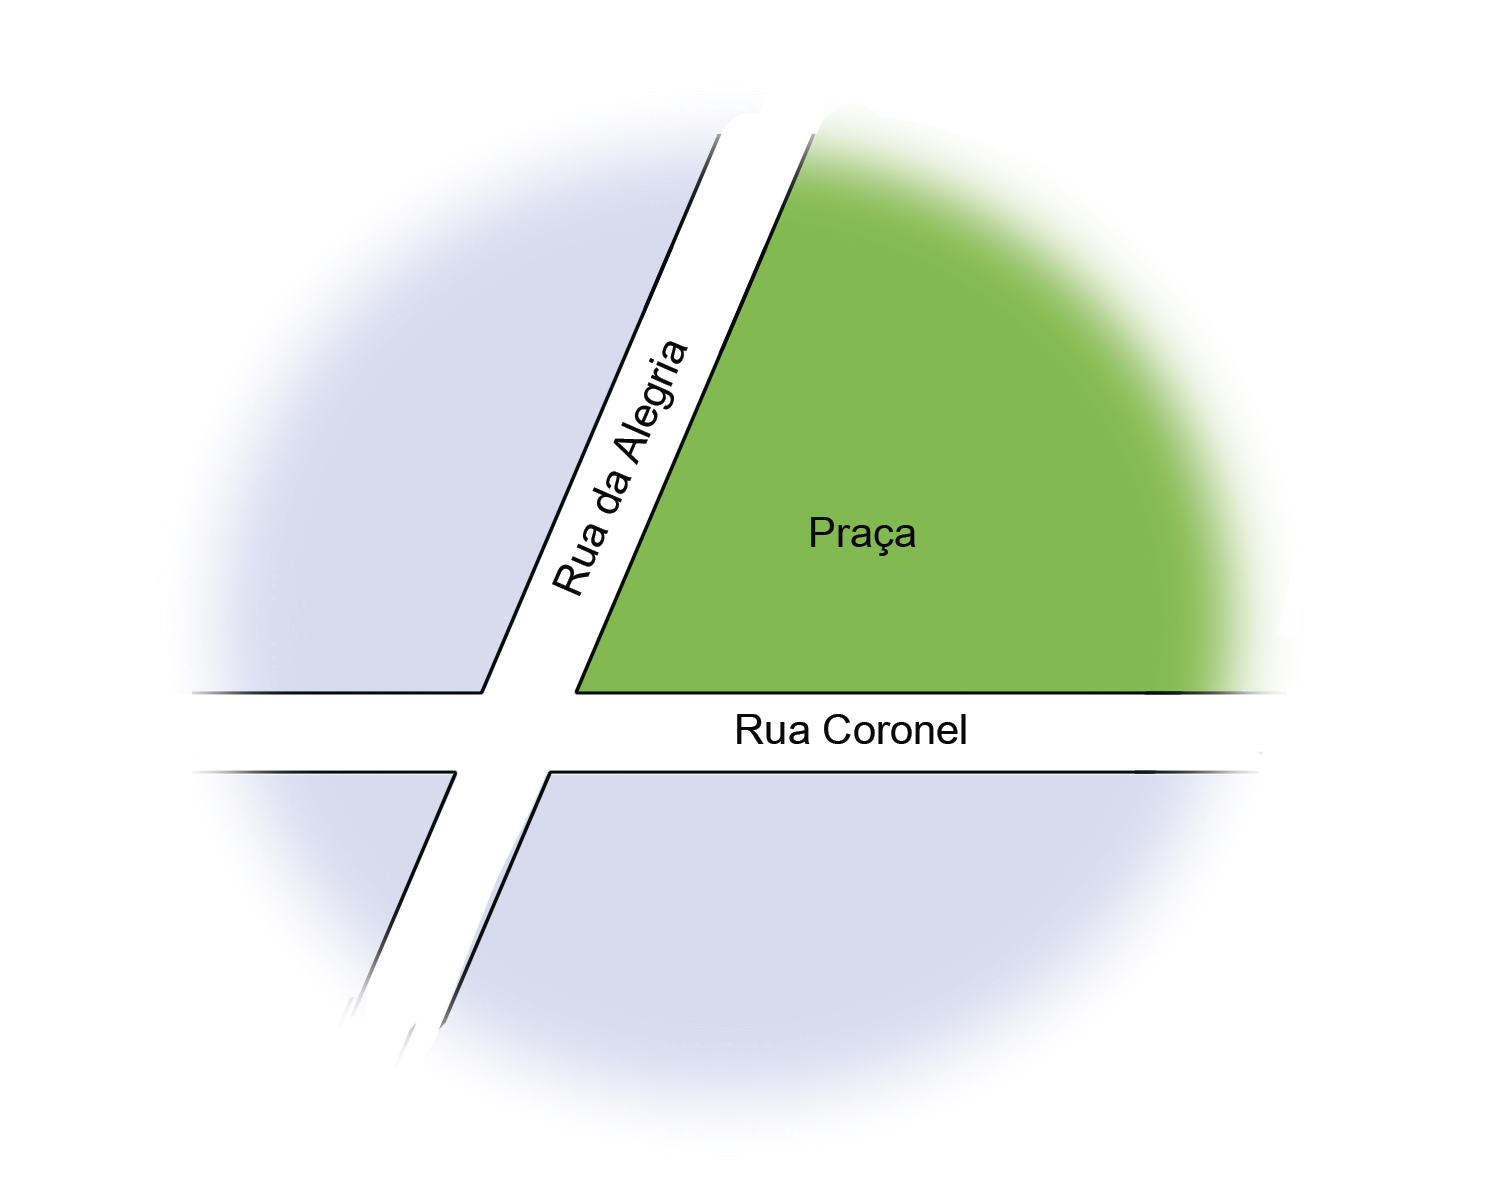 Ilustração. Duas retas cruzadas representando ruas à esquerda de uma praça. Rua vertical com o nome Rua da Alegria. Rua horizontal com o nome Rua Coronel.